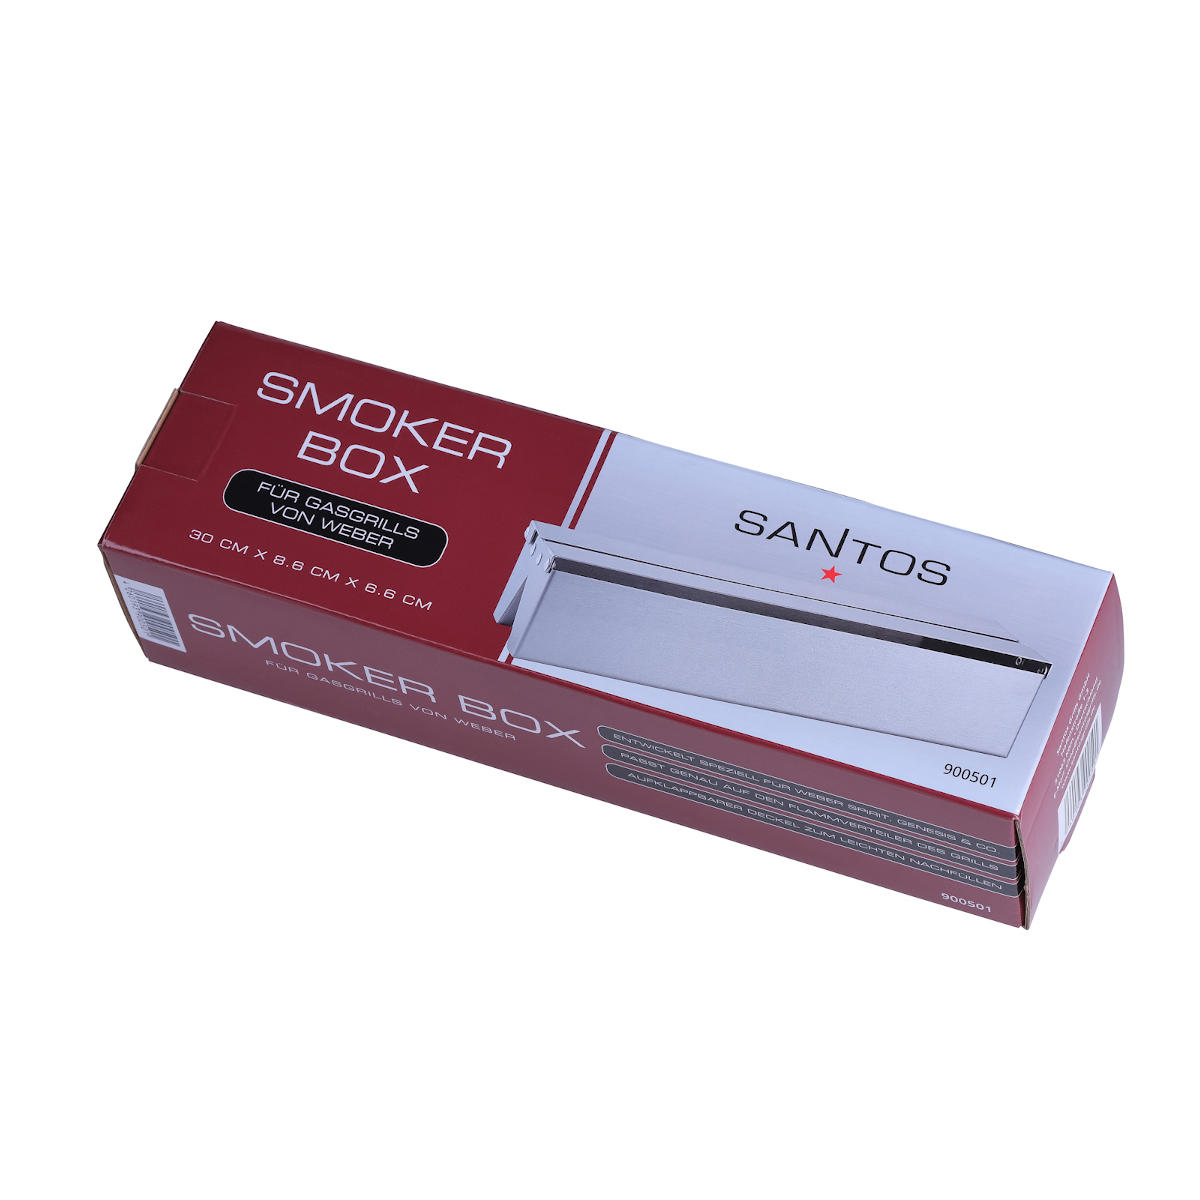 SANTOS Smoker Box für Weber Gasgrills Verpackung